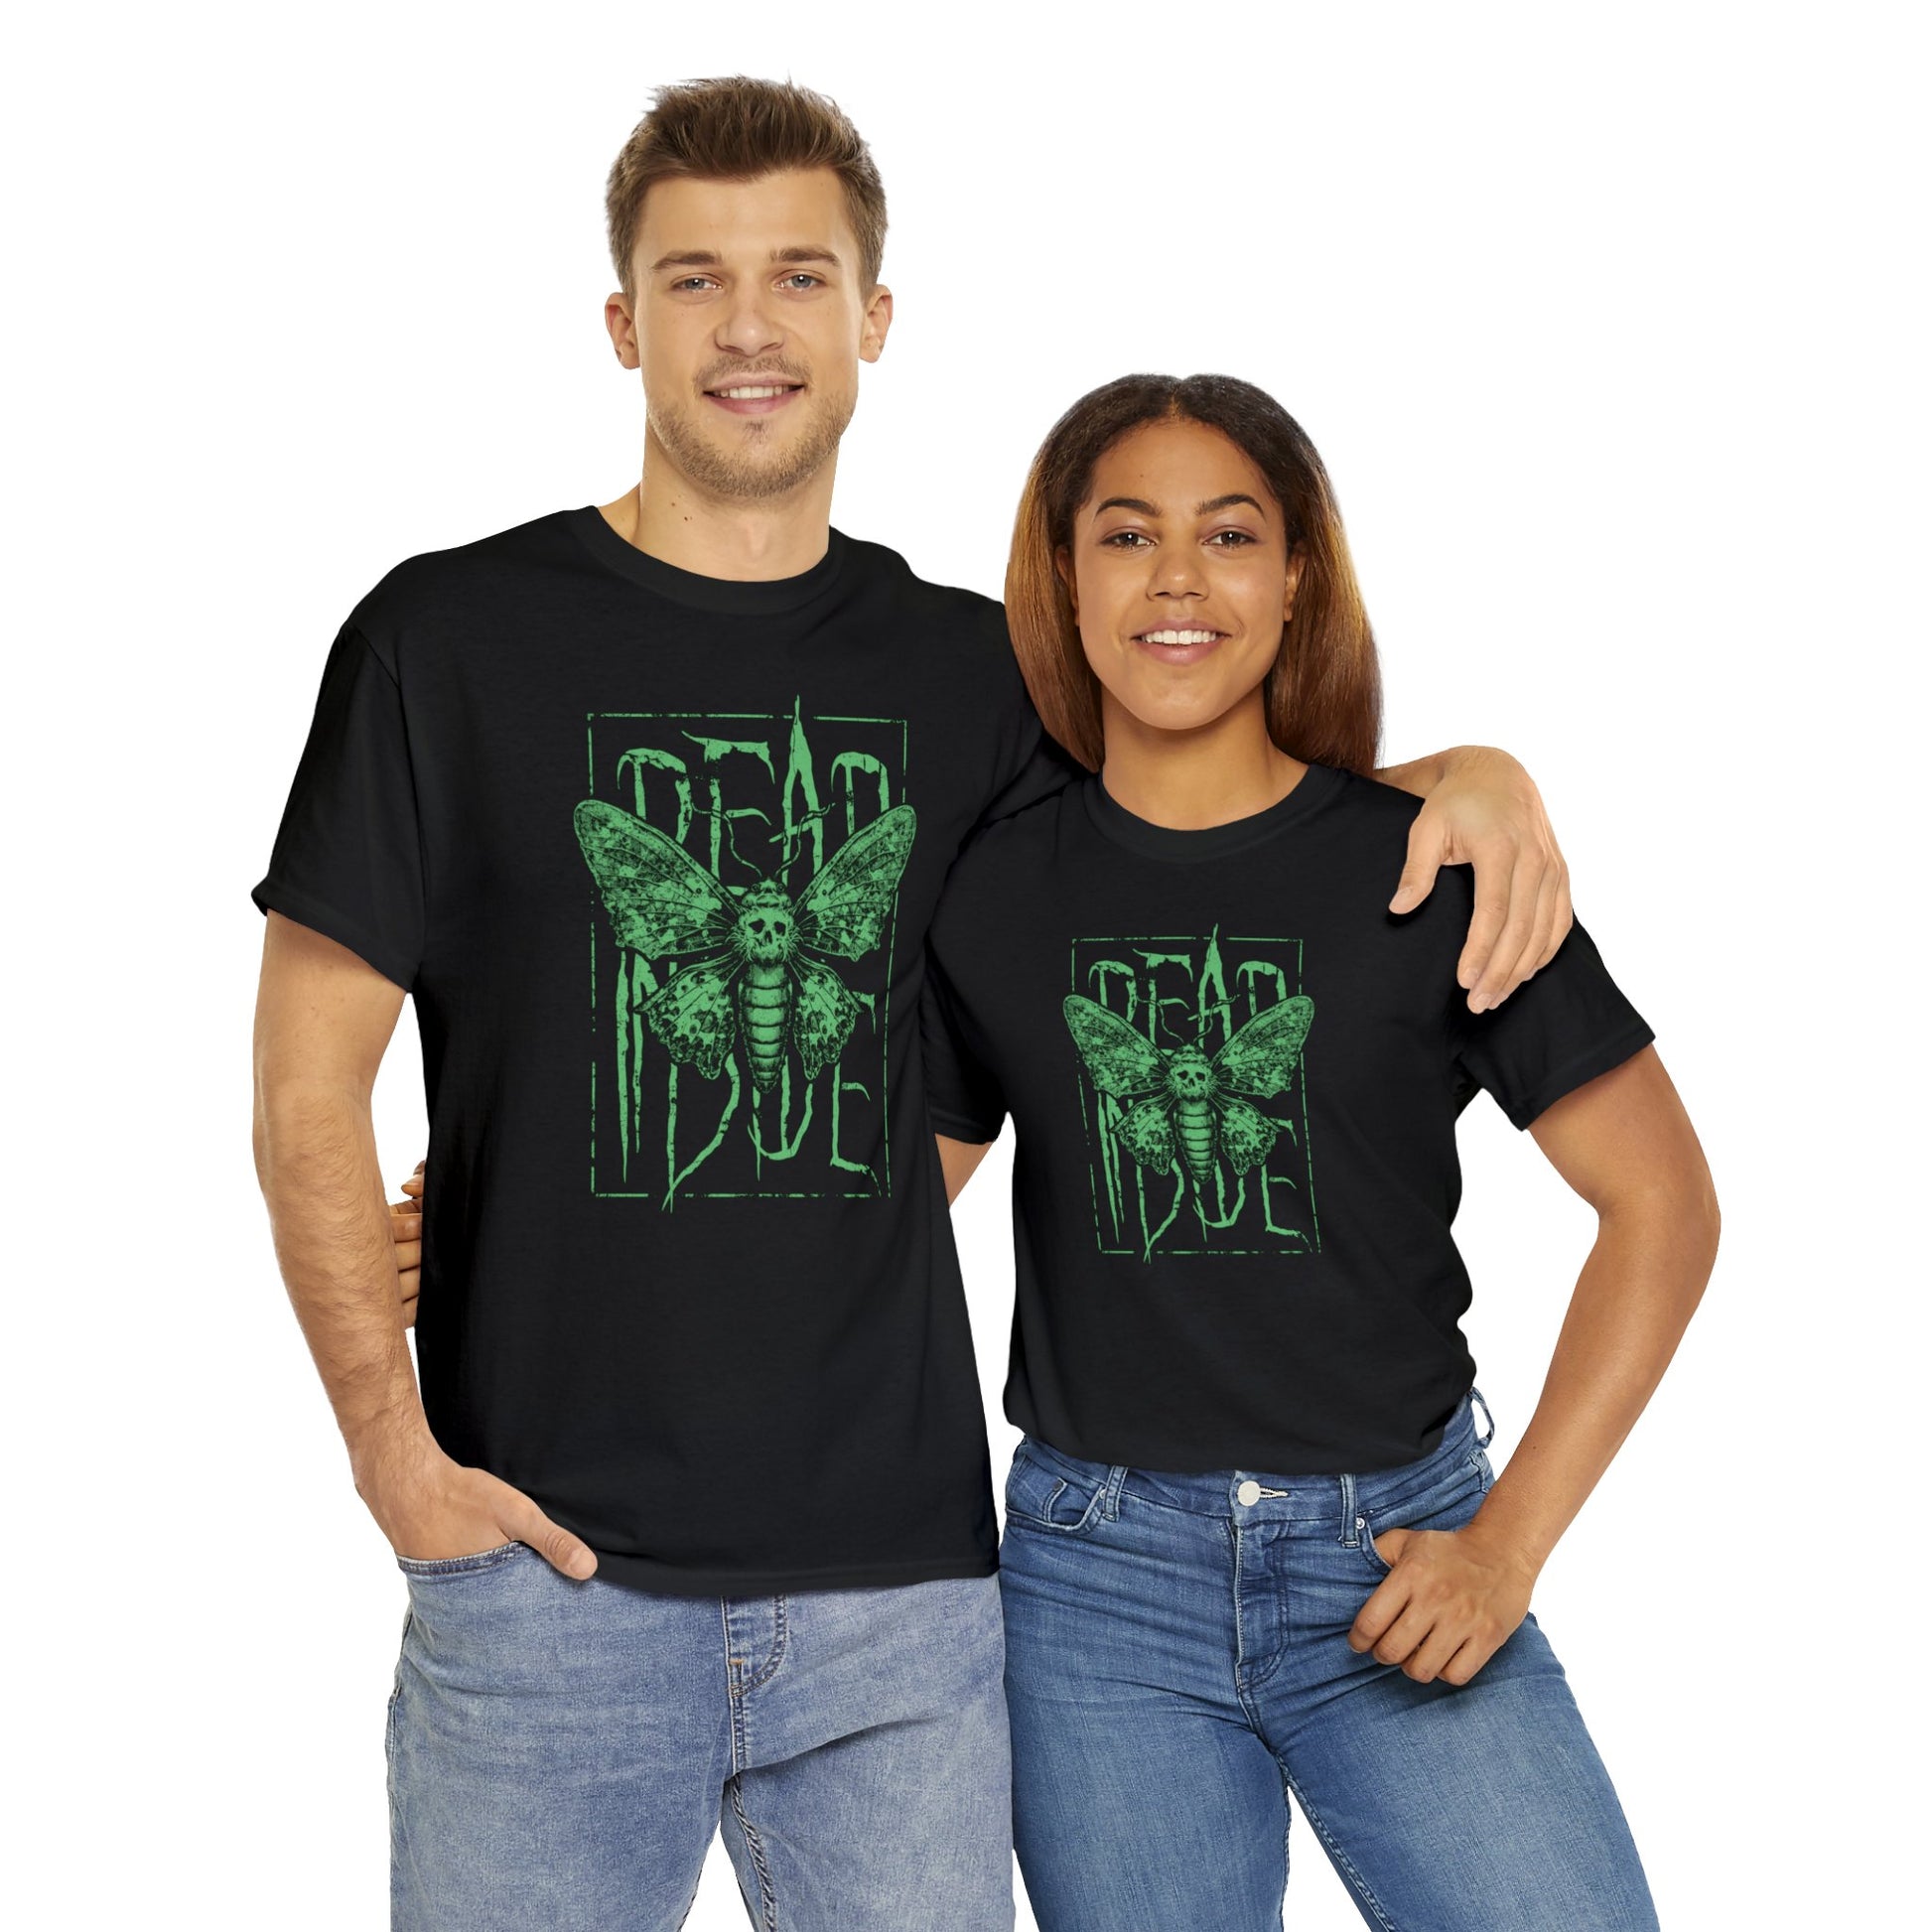 Unisex T-shirt Dead Inside in Green - Frogos Design